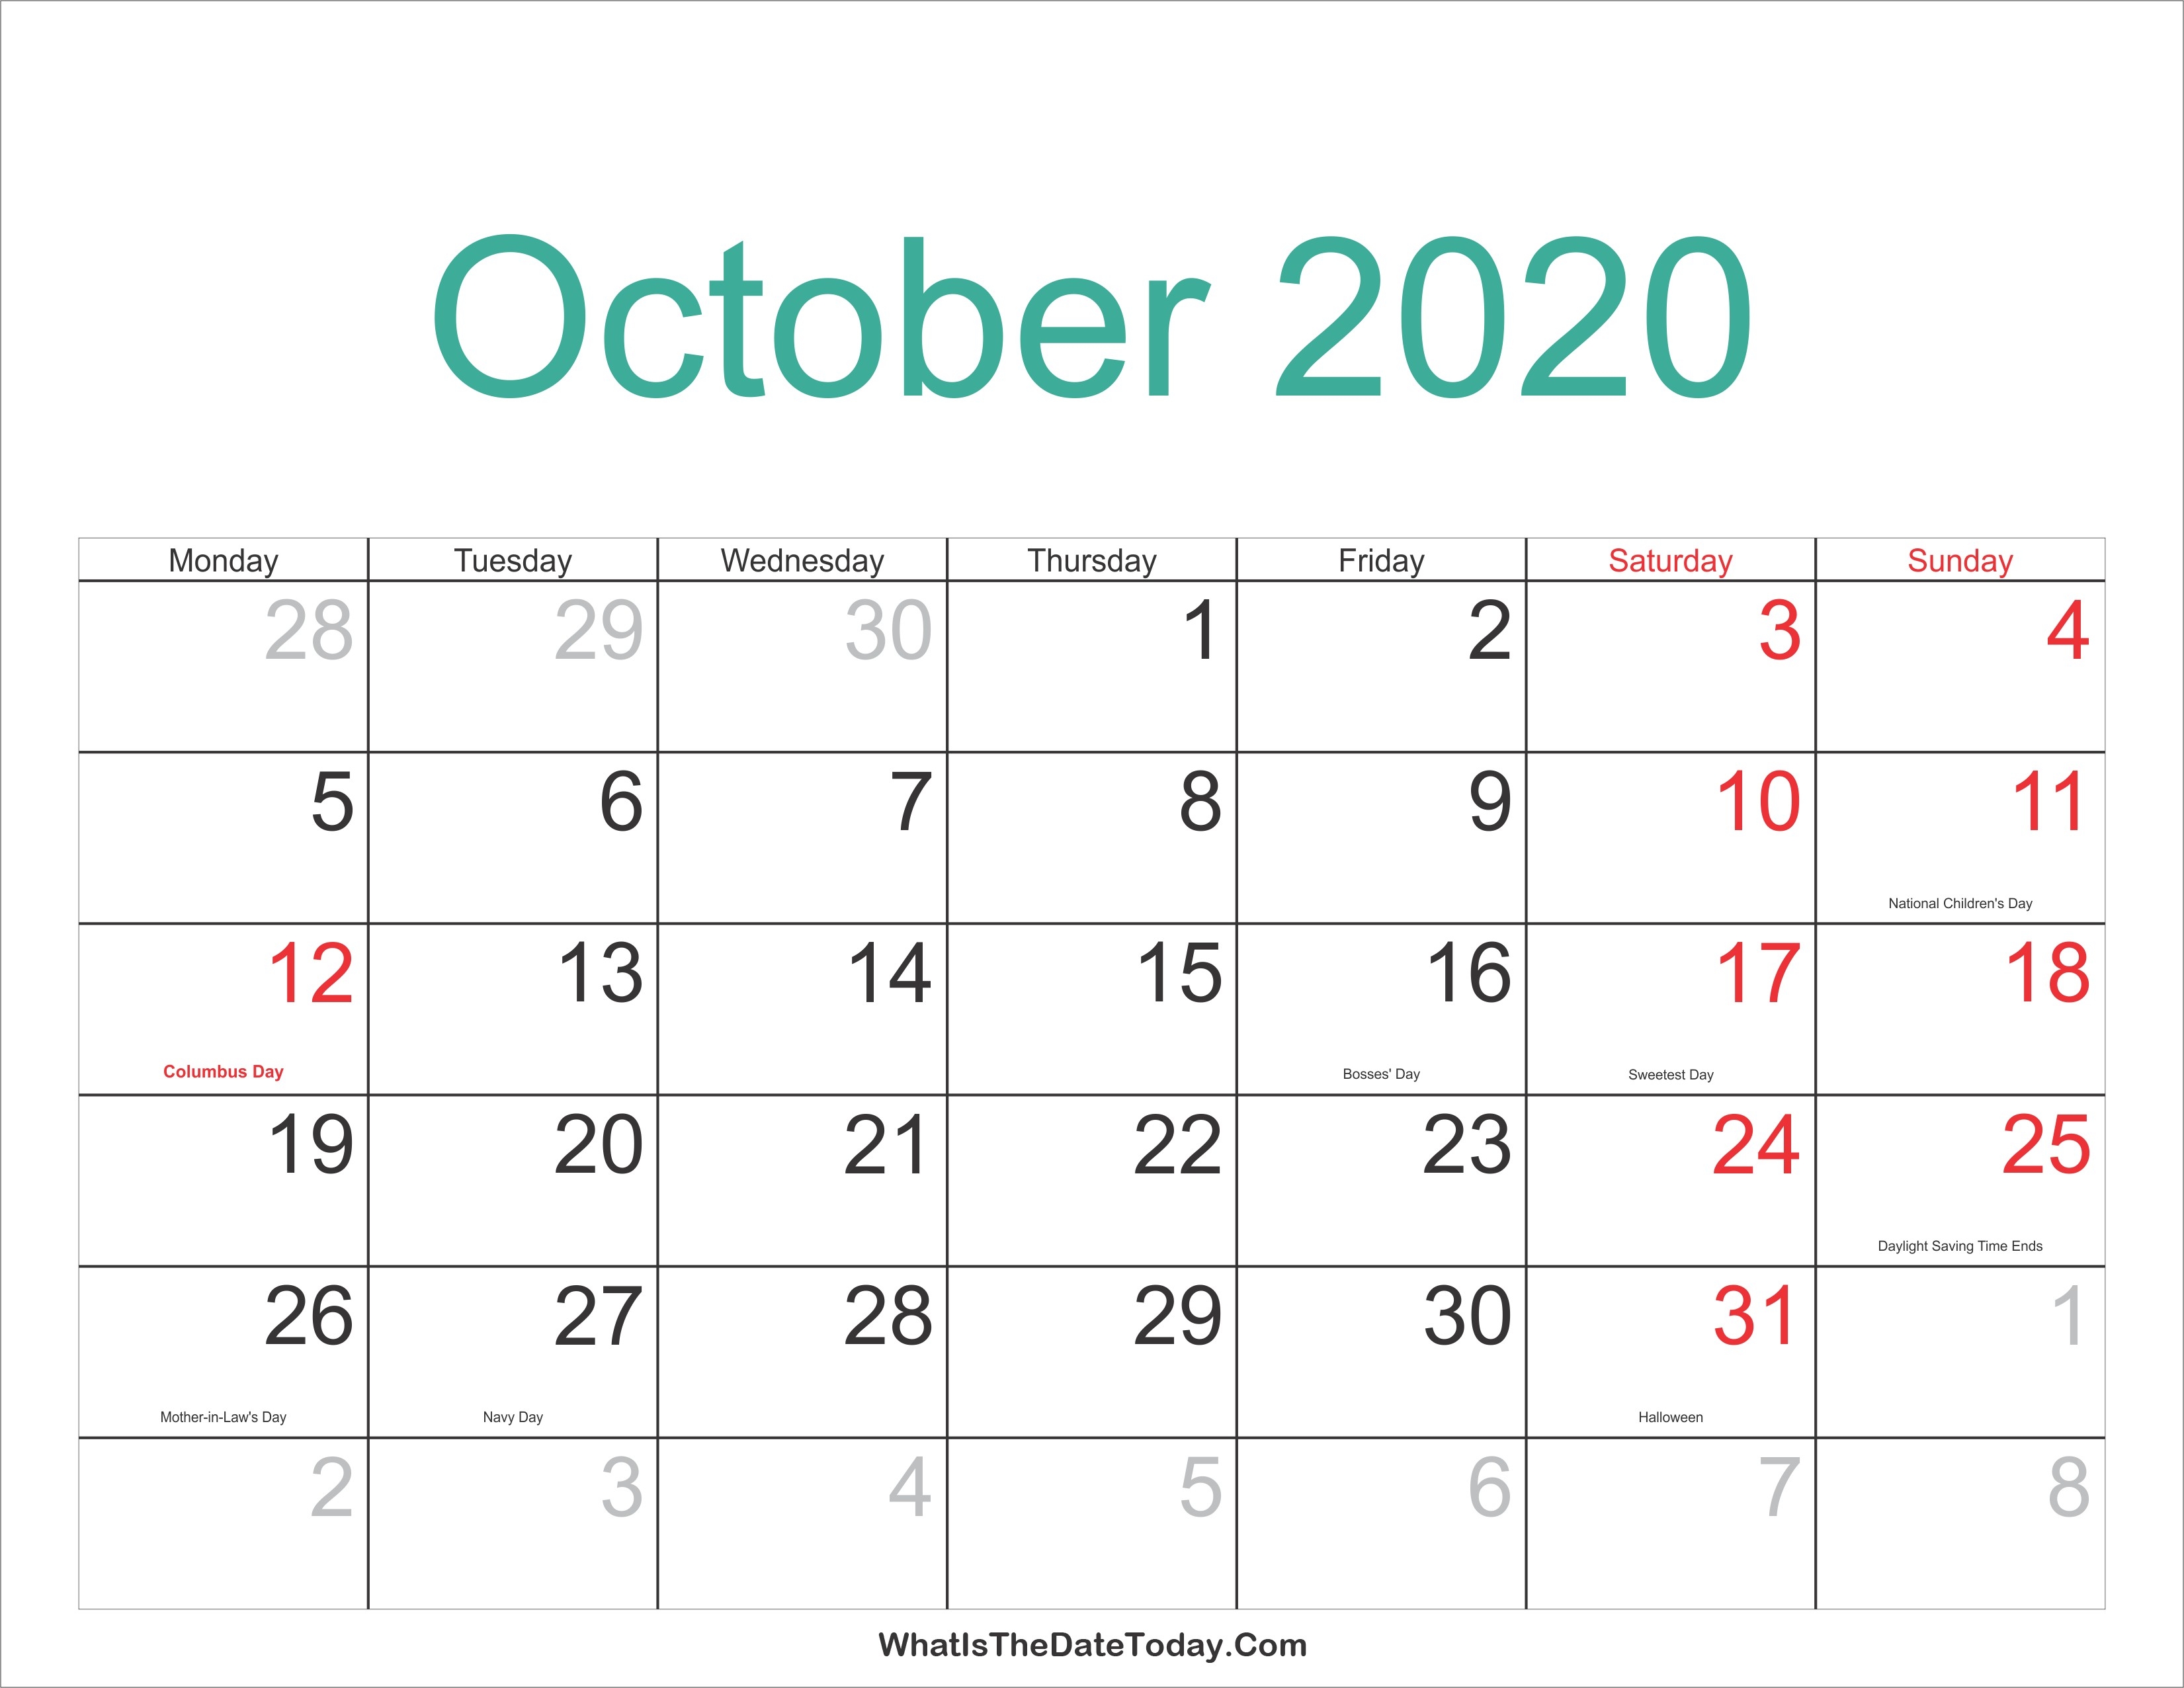 October 2020 Calendar | Thekpark-Hadong-Jewish Holidays October 2020